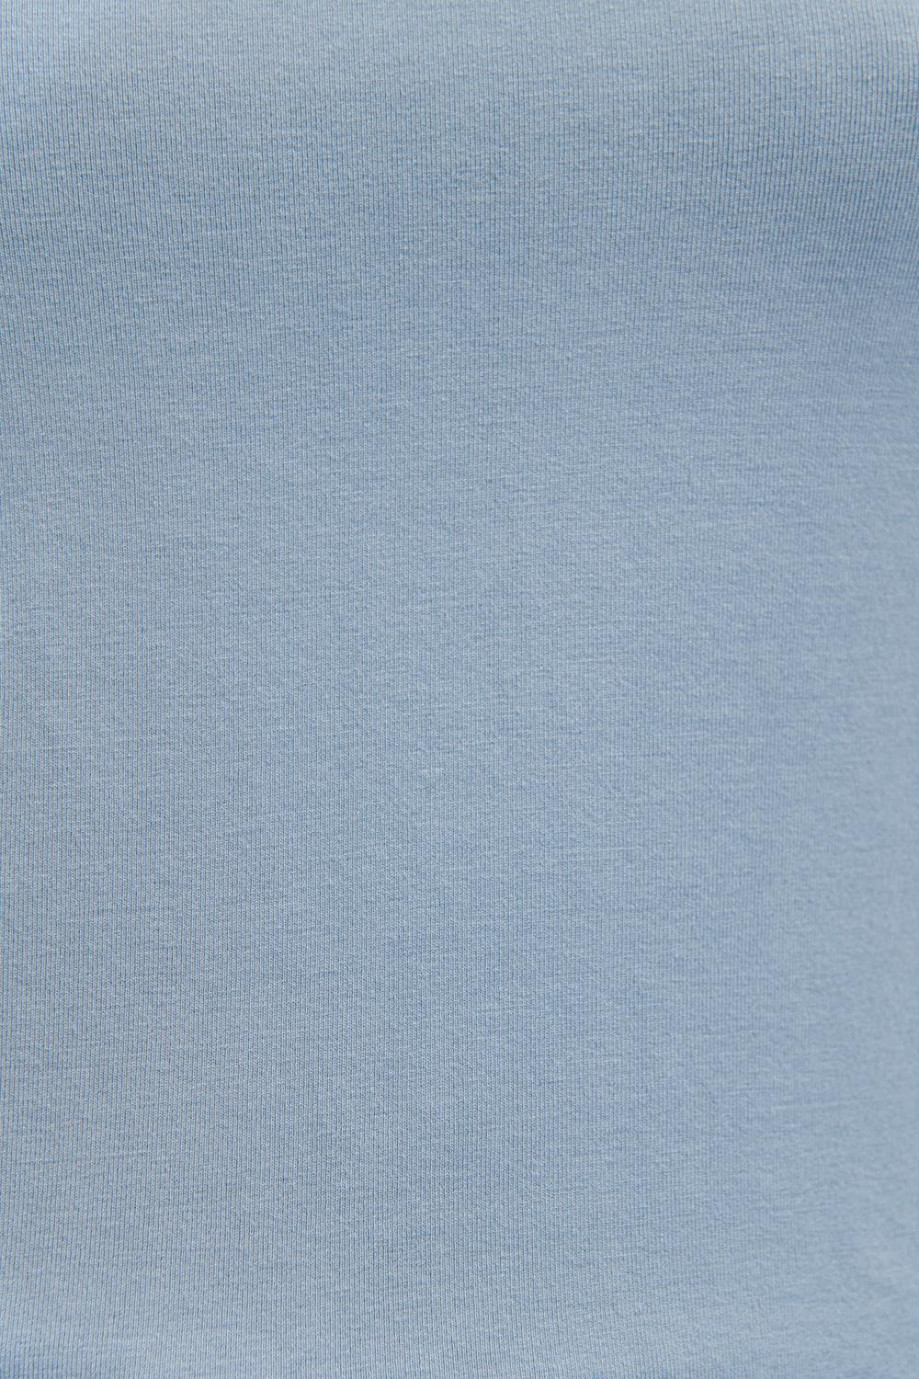 Camiseta unicolor manga corta con detalles en mini filete